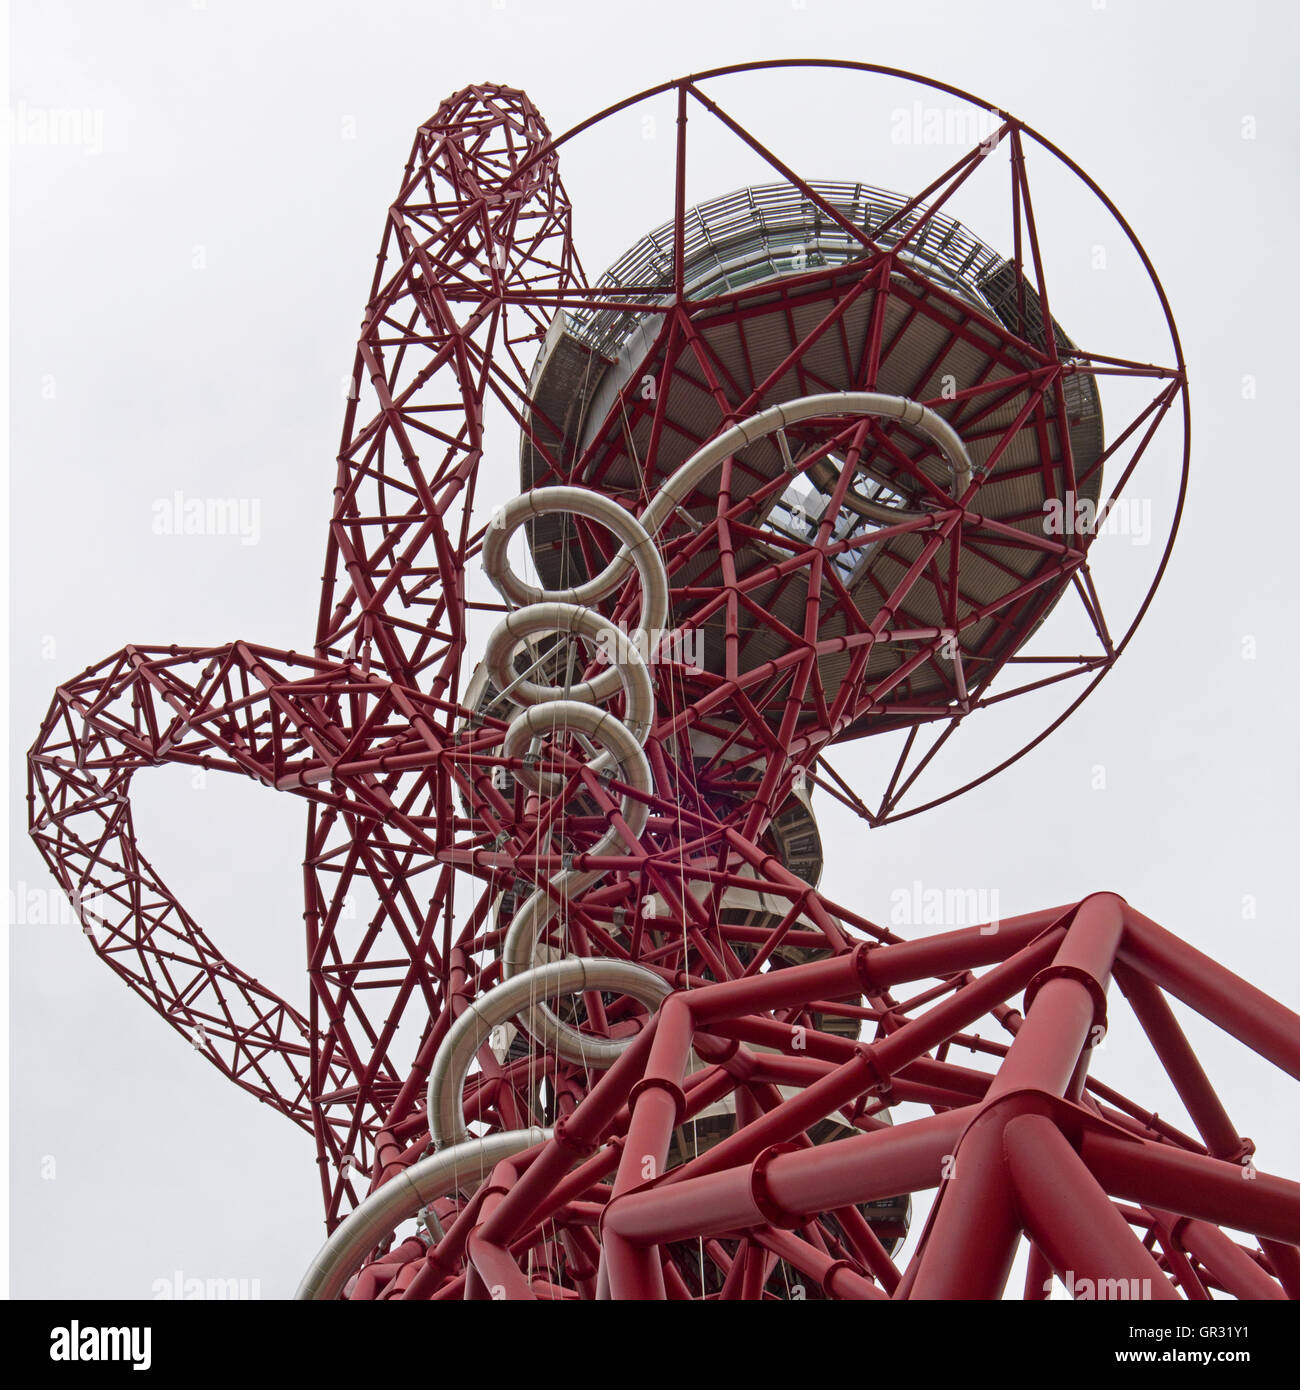 L'orbite d'ArcelorMittal dans le parc Queen Elizabeth Olympic Park, Londres. Banque D'Images